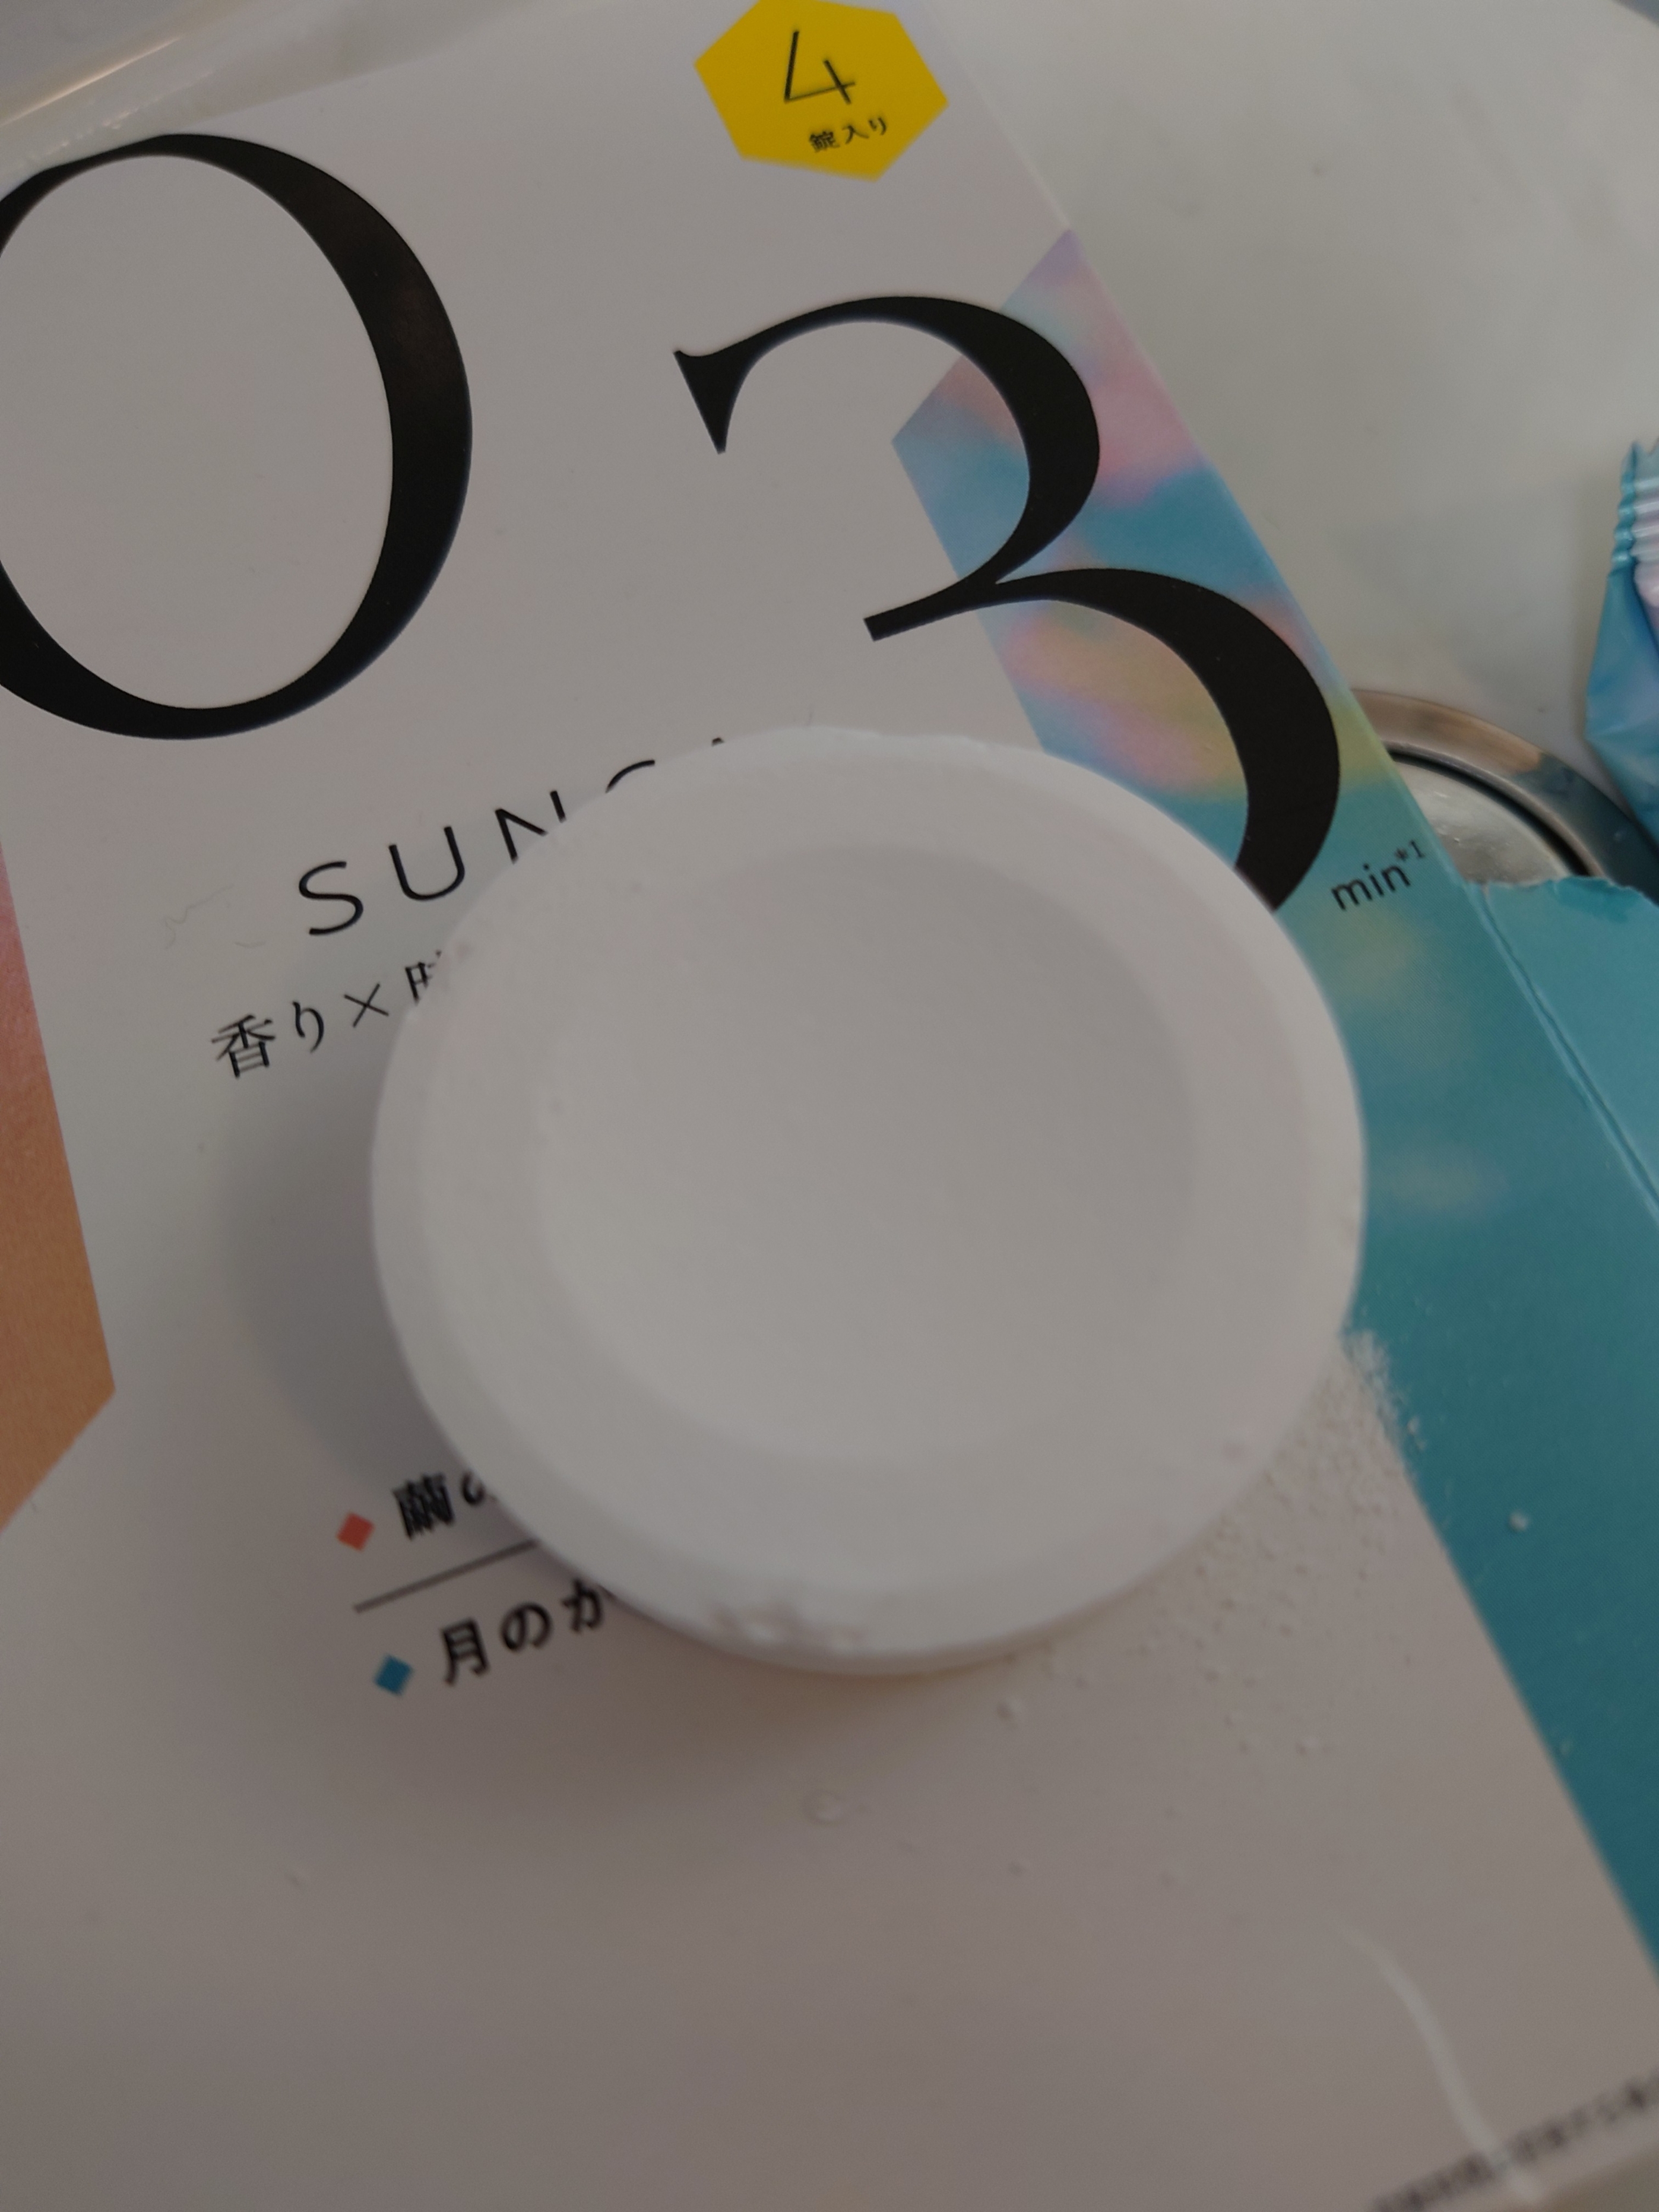 SUNCA(スンカ) 入浴剤 アソートの良い点・メリットに関するくみくみさんの口コミ画像2